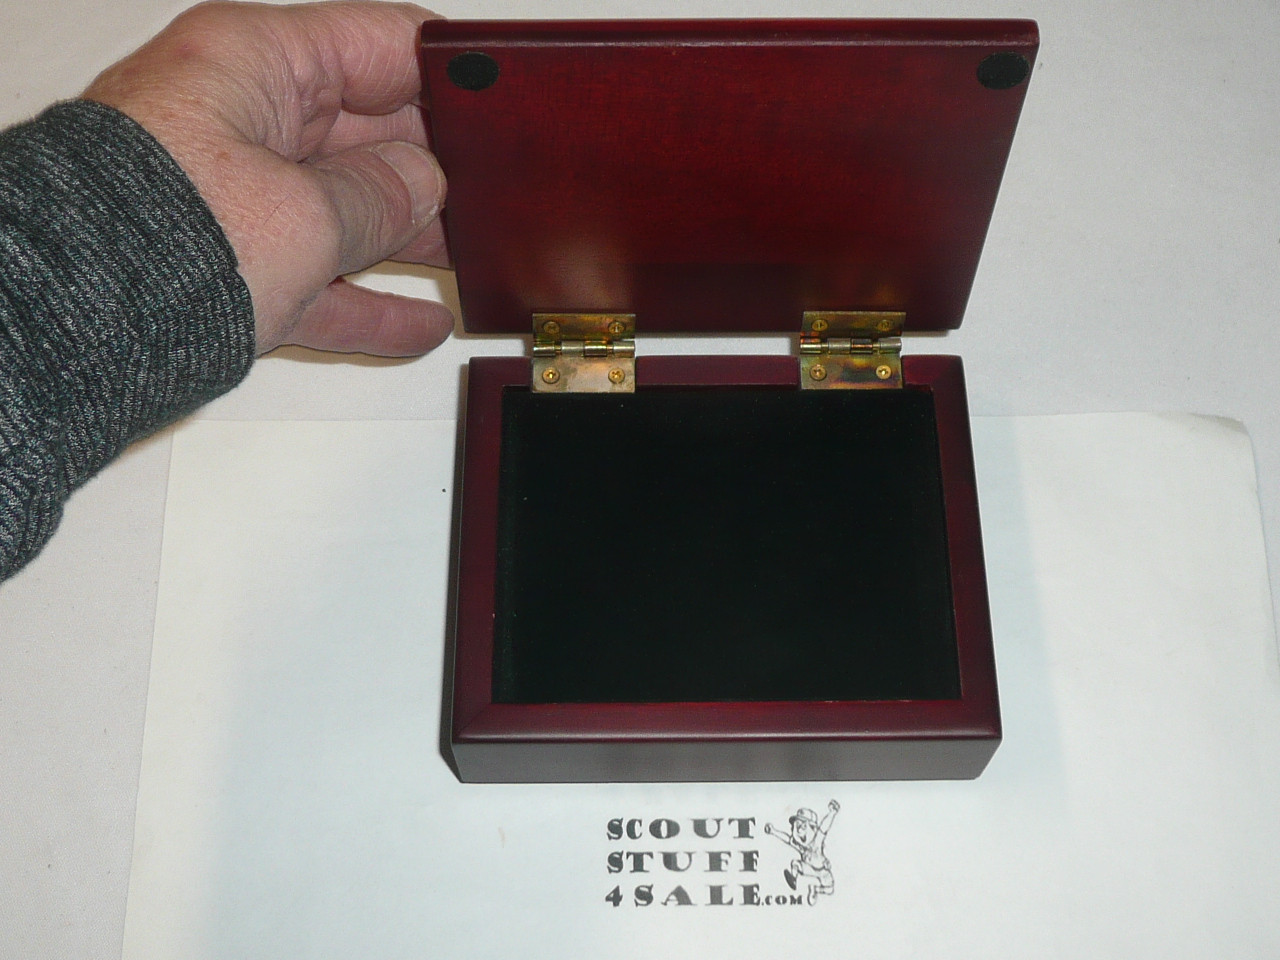 Boy Scout Trinket Box, 6" x 5", metal top